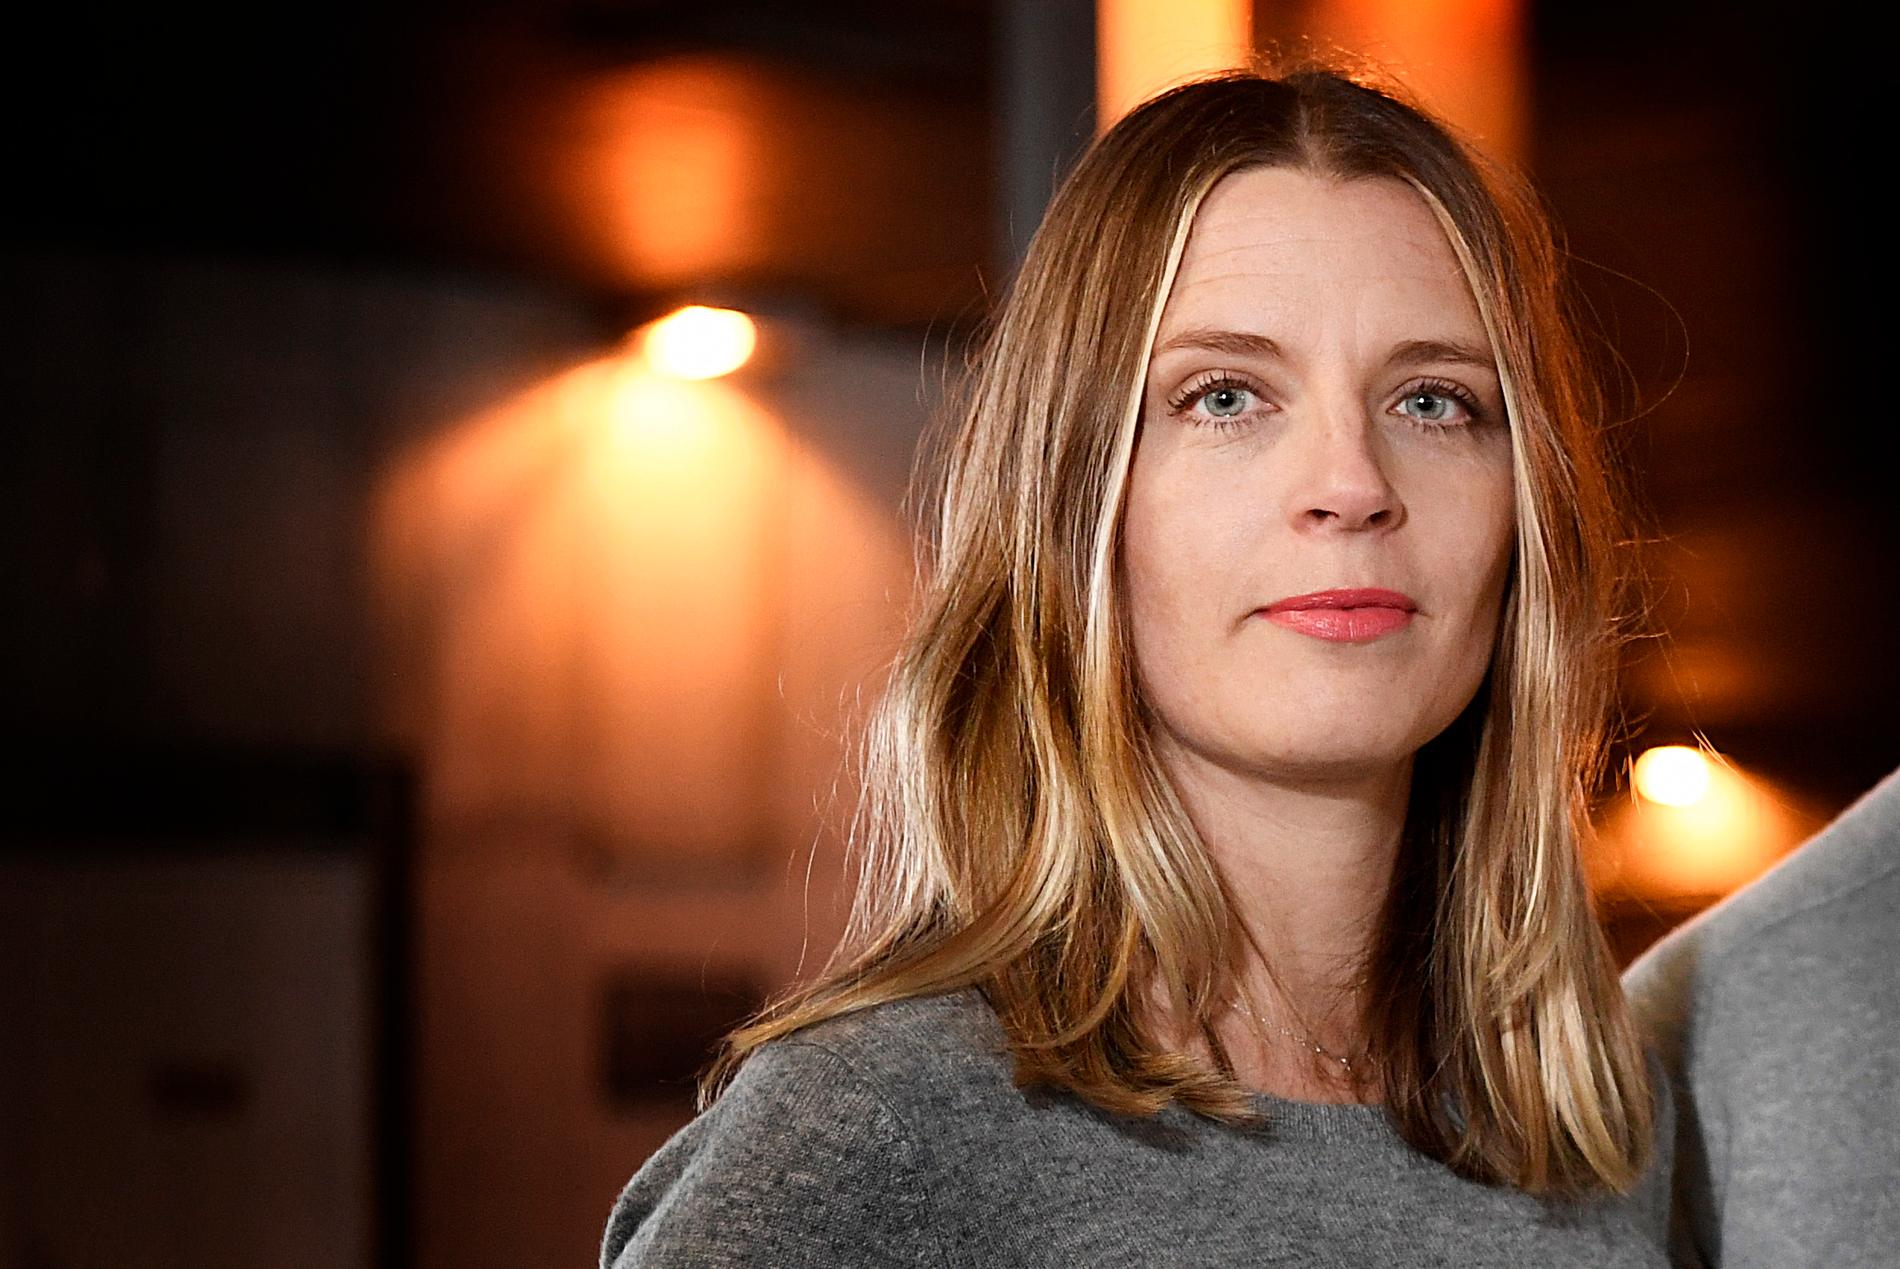 Aftonbladets krönikör Johanna Frändén, 38, blir den 18:e journalisten i ordningen att tilldelas Jolopriset.